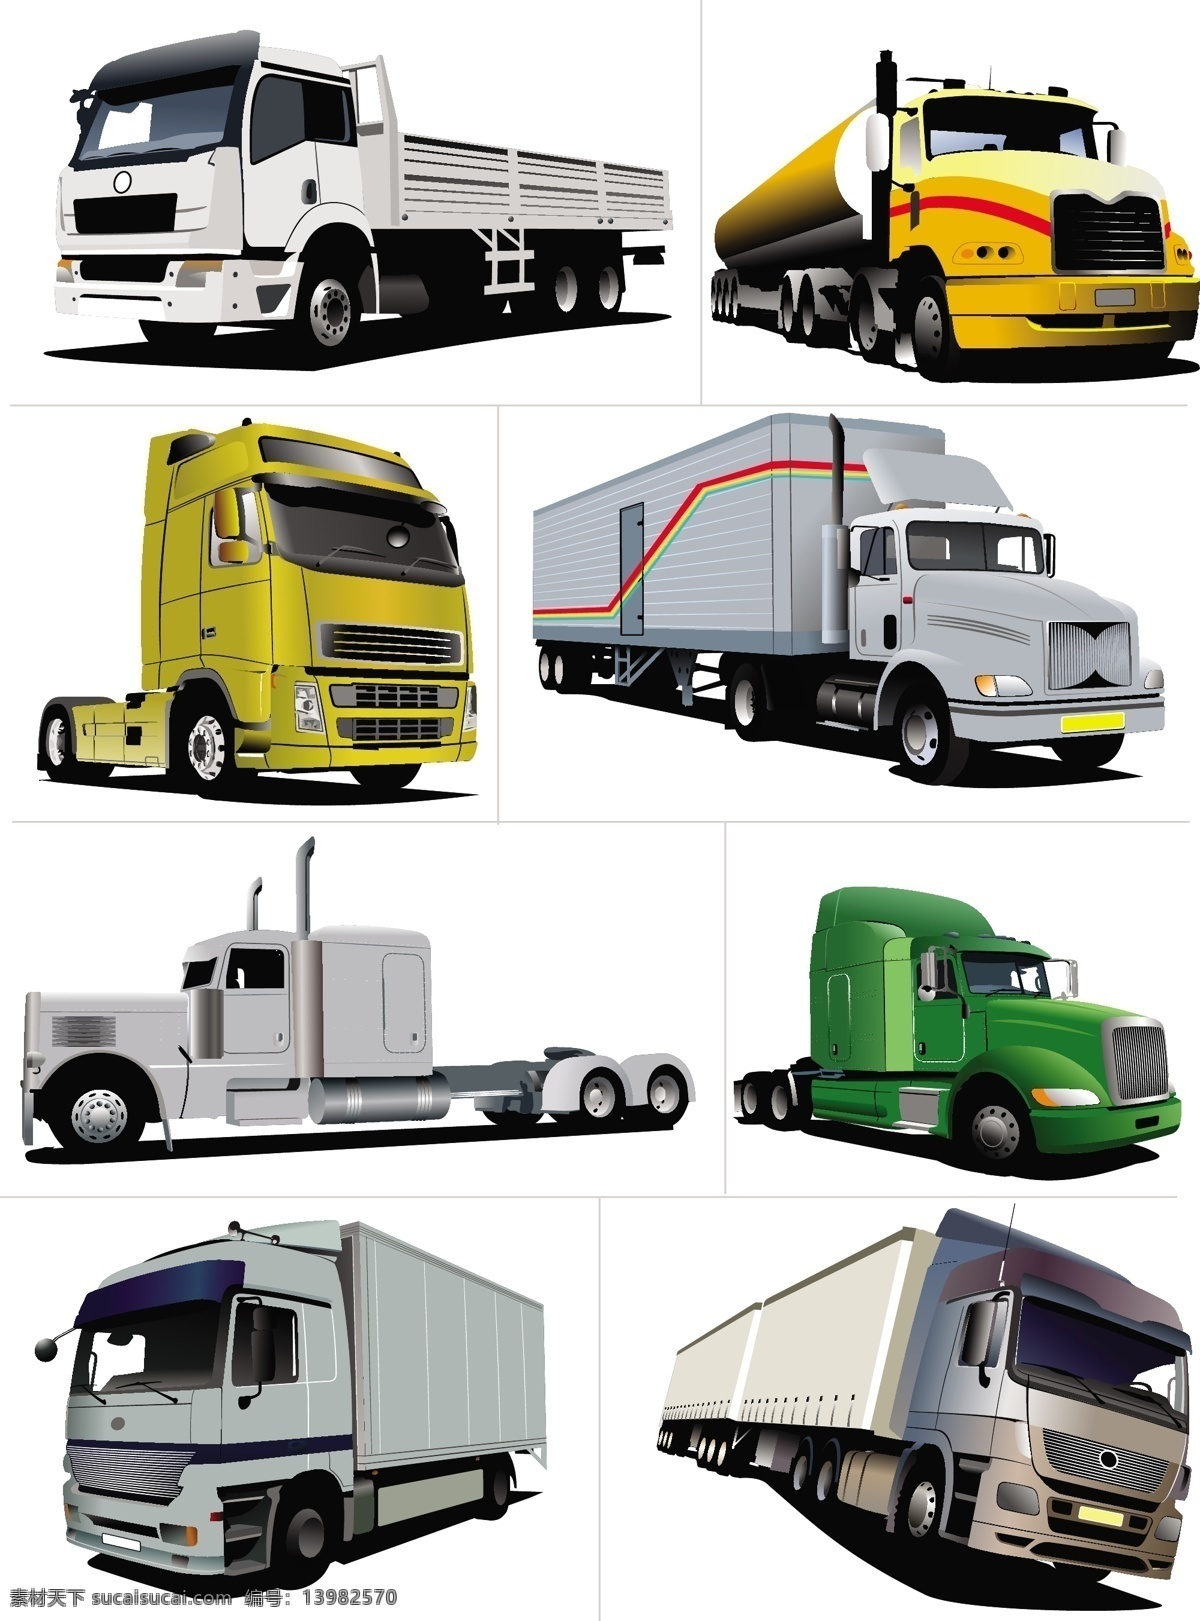 大卡车设计 各类大卡车 大卡车模型 工程车半挂车 自卸车油罐车 大型货车 卡通 现代科技 交通工具